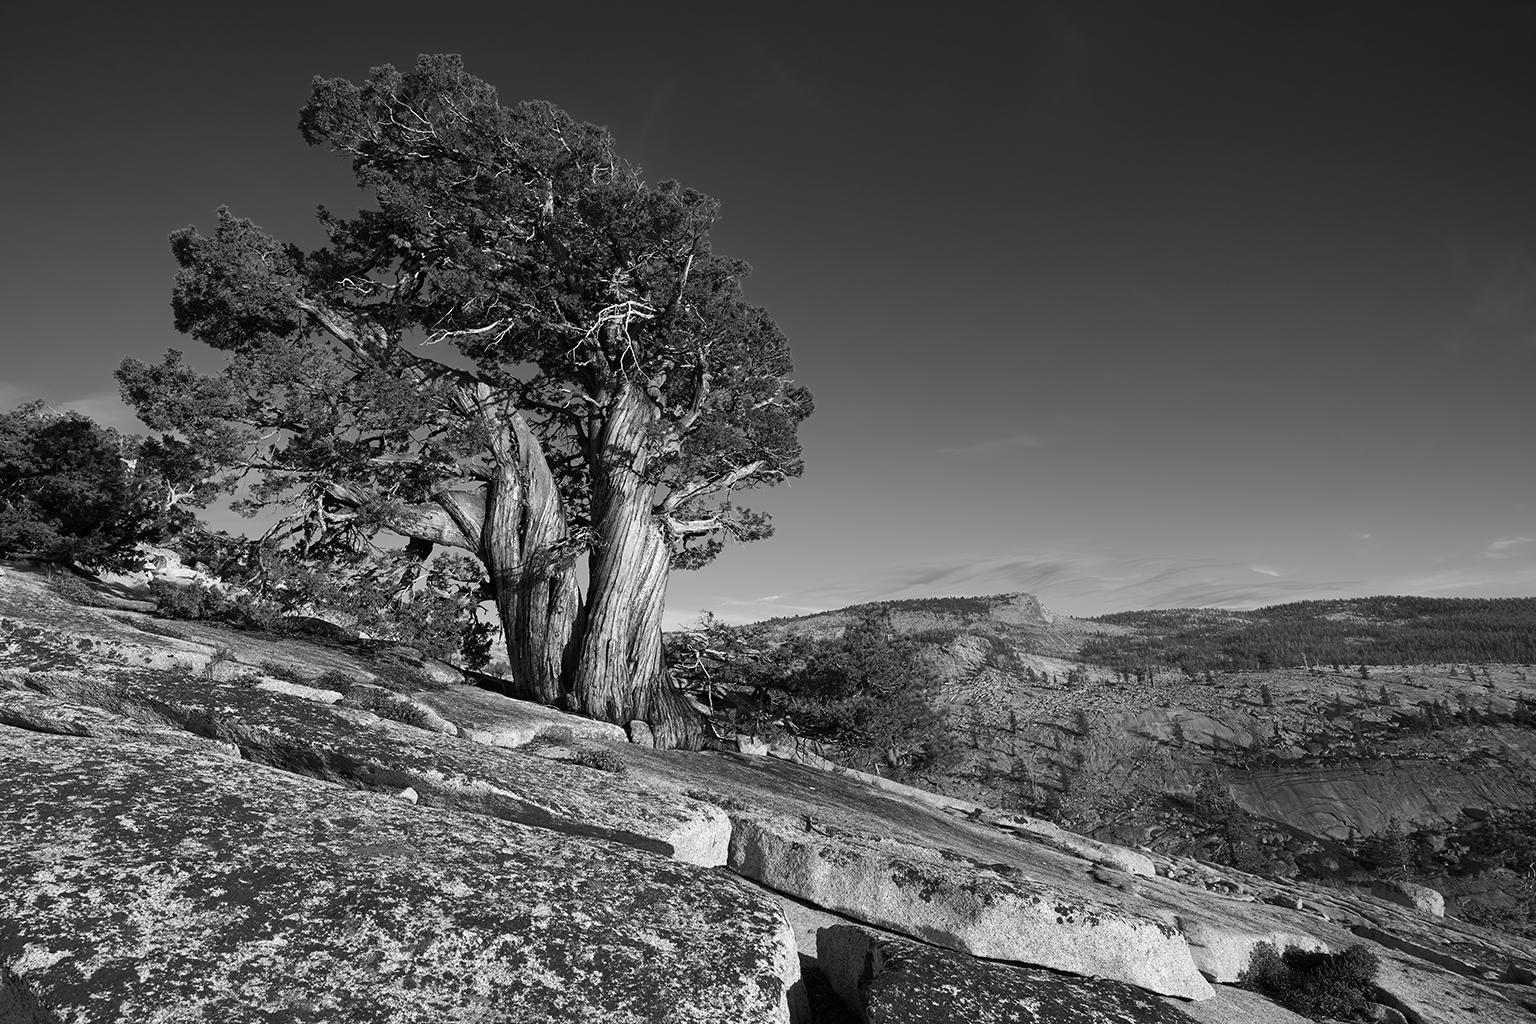 Tree Study II – Großformatige b/w-Fotografie eines einsamen antiken Baumes in Landschaft (Zeitgenössisch), Photograph, von Frank Schott